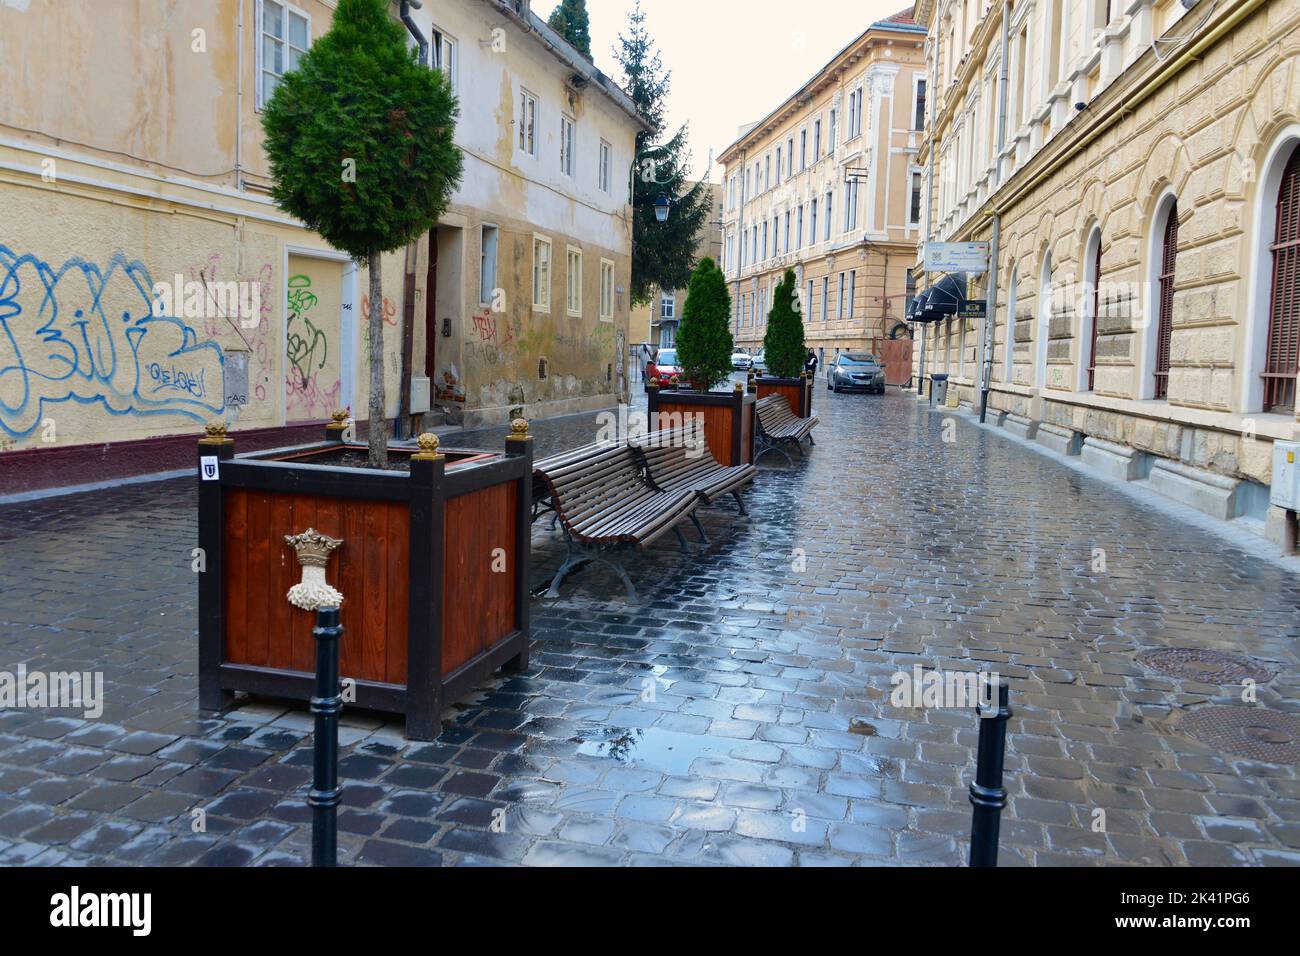 Viale pubblico lastricato e vecchie case medievali nel centro storico della città di Brasov Foto Stock